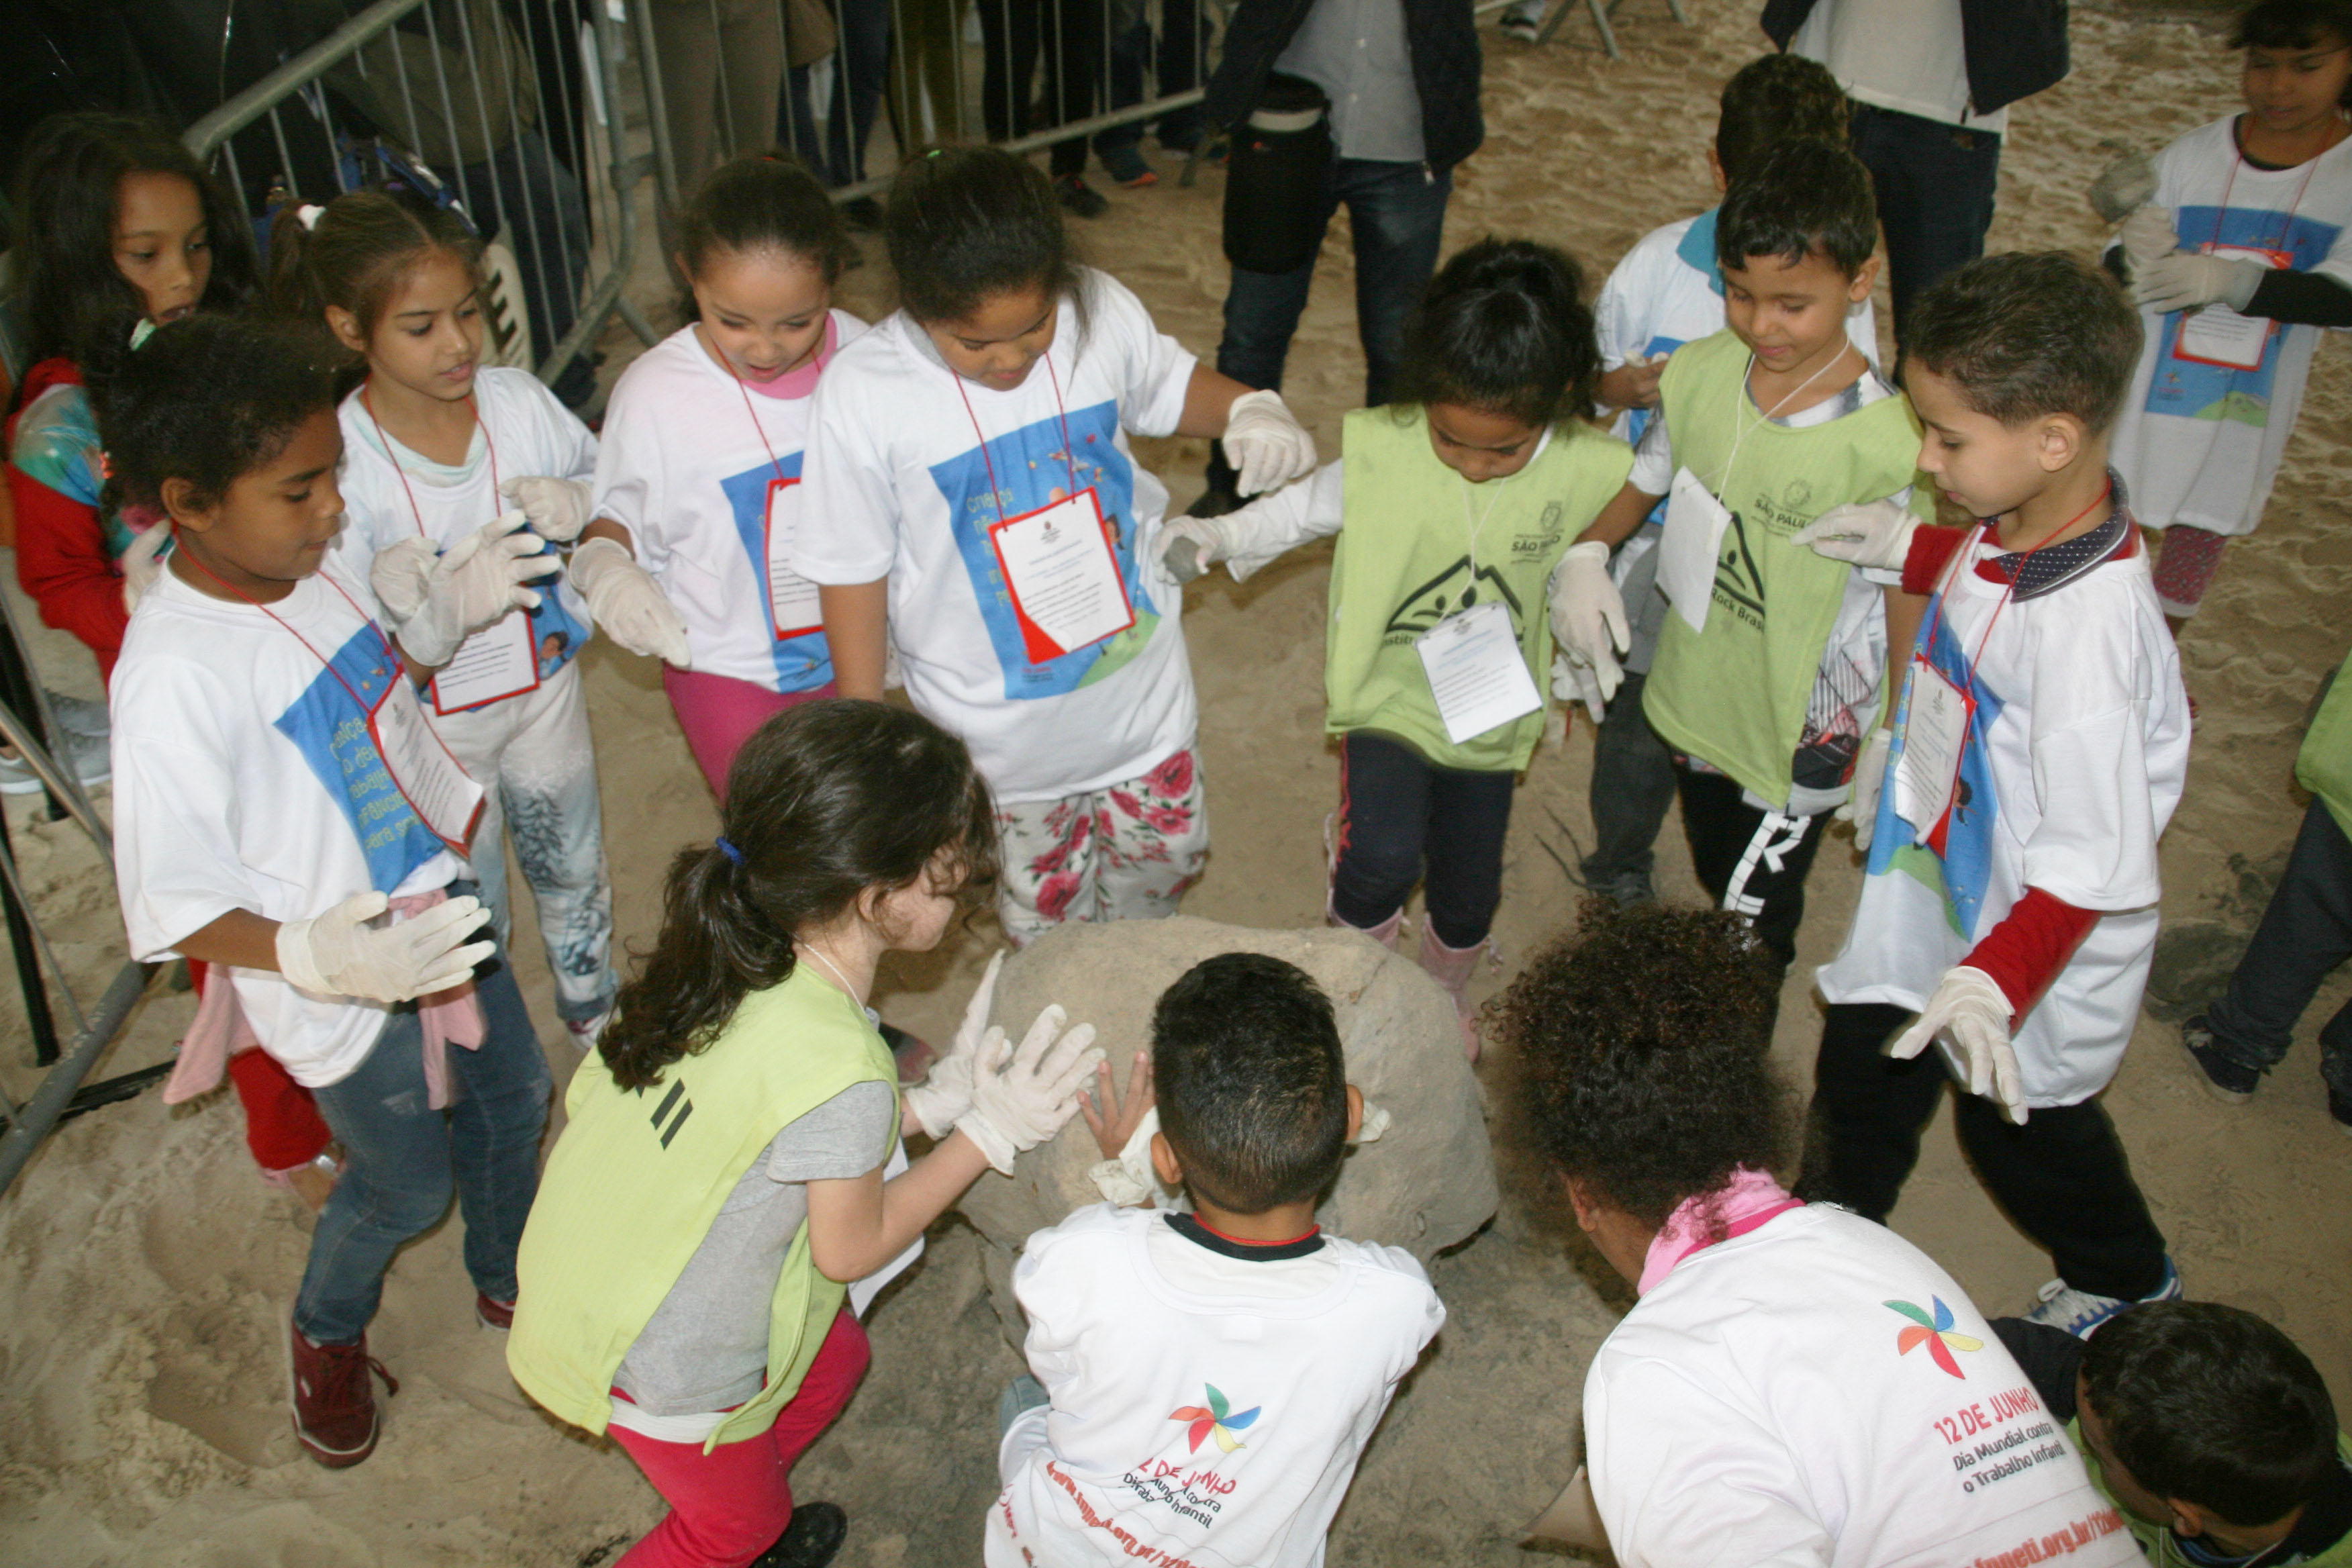 Doze crianças, entre meninos e meninas, destroem escultura de areia em tenda do evento no Parque Ibirapuera